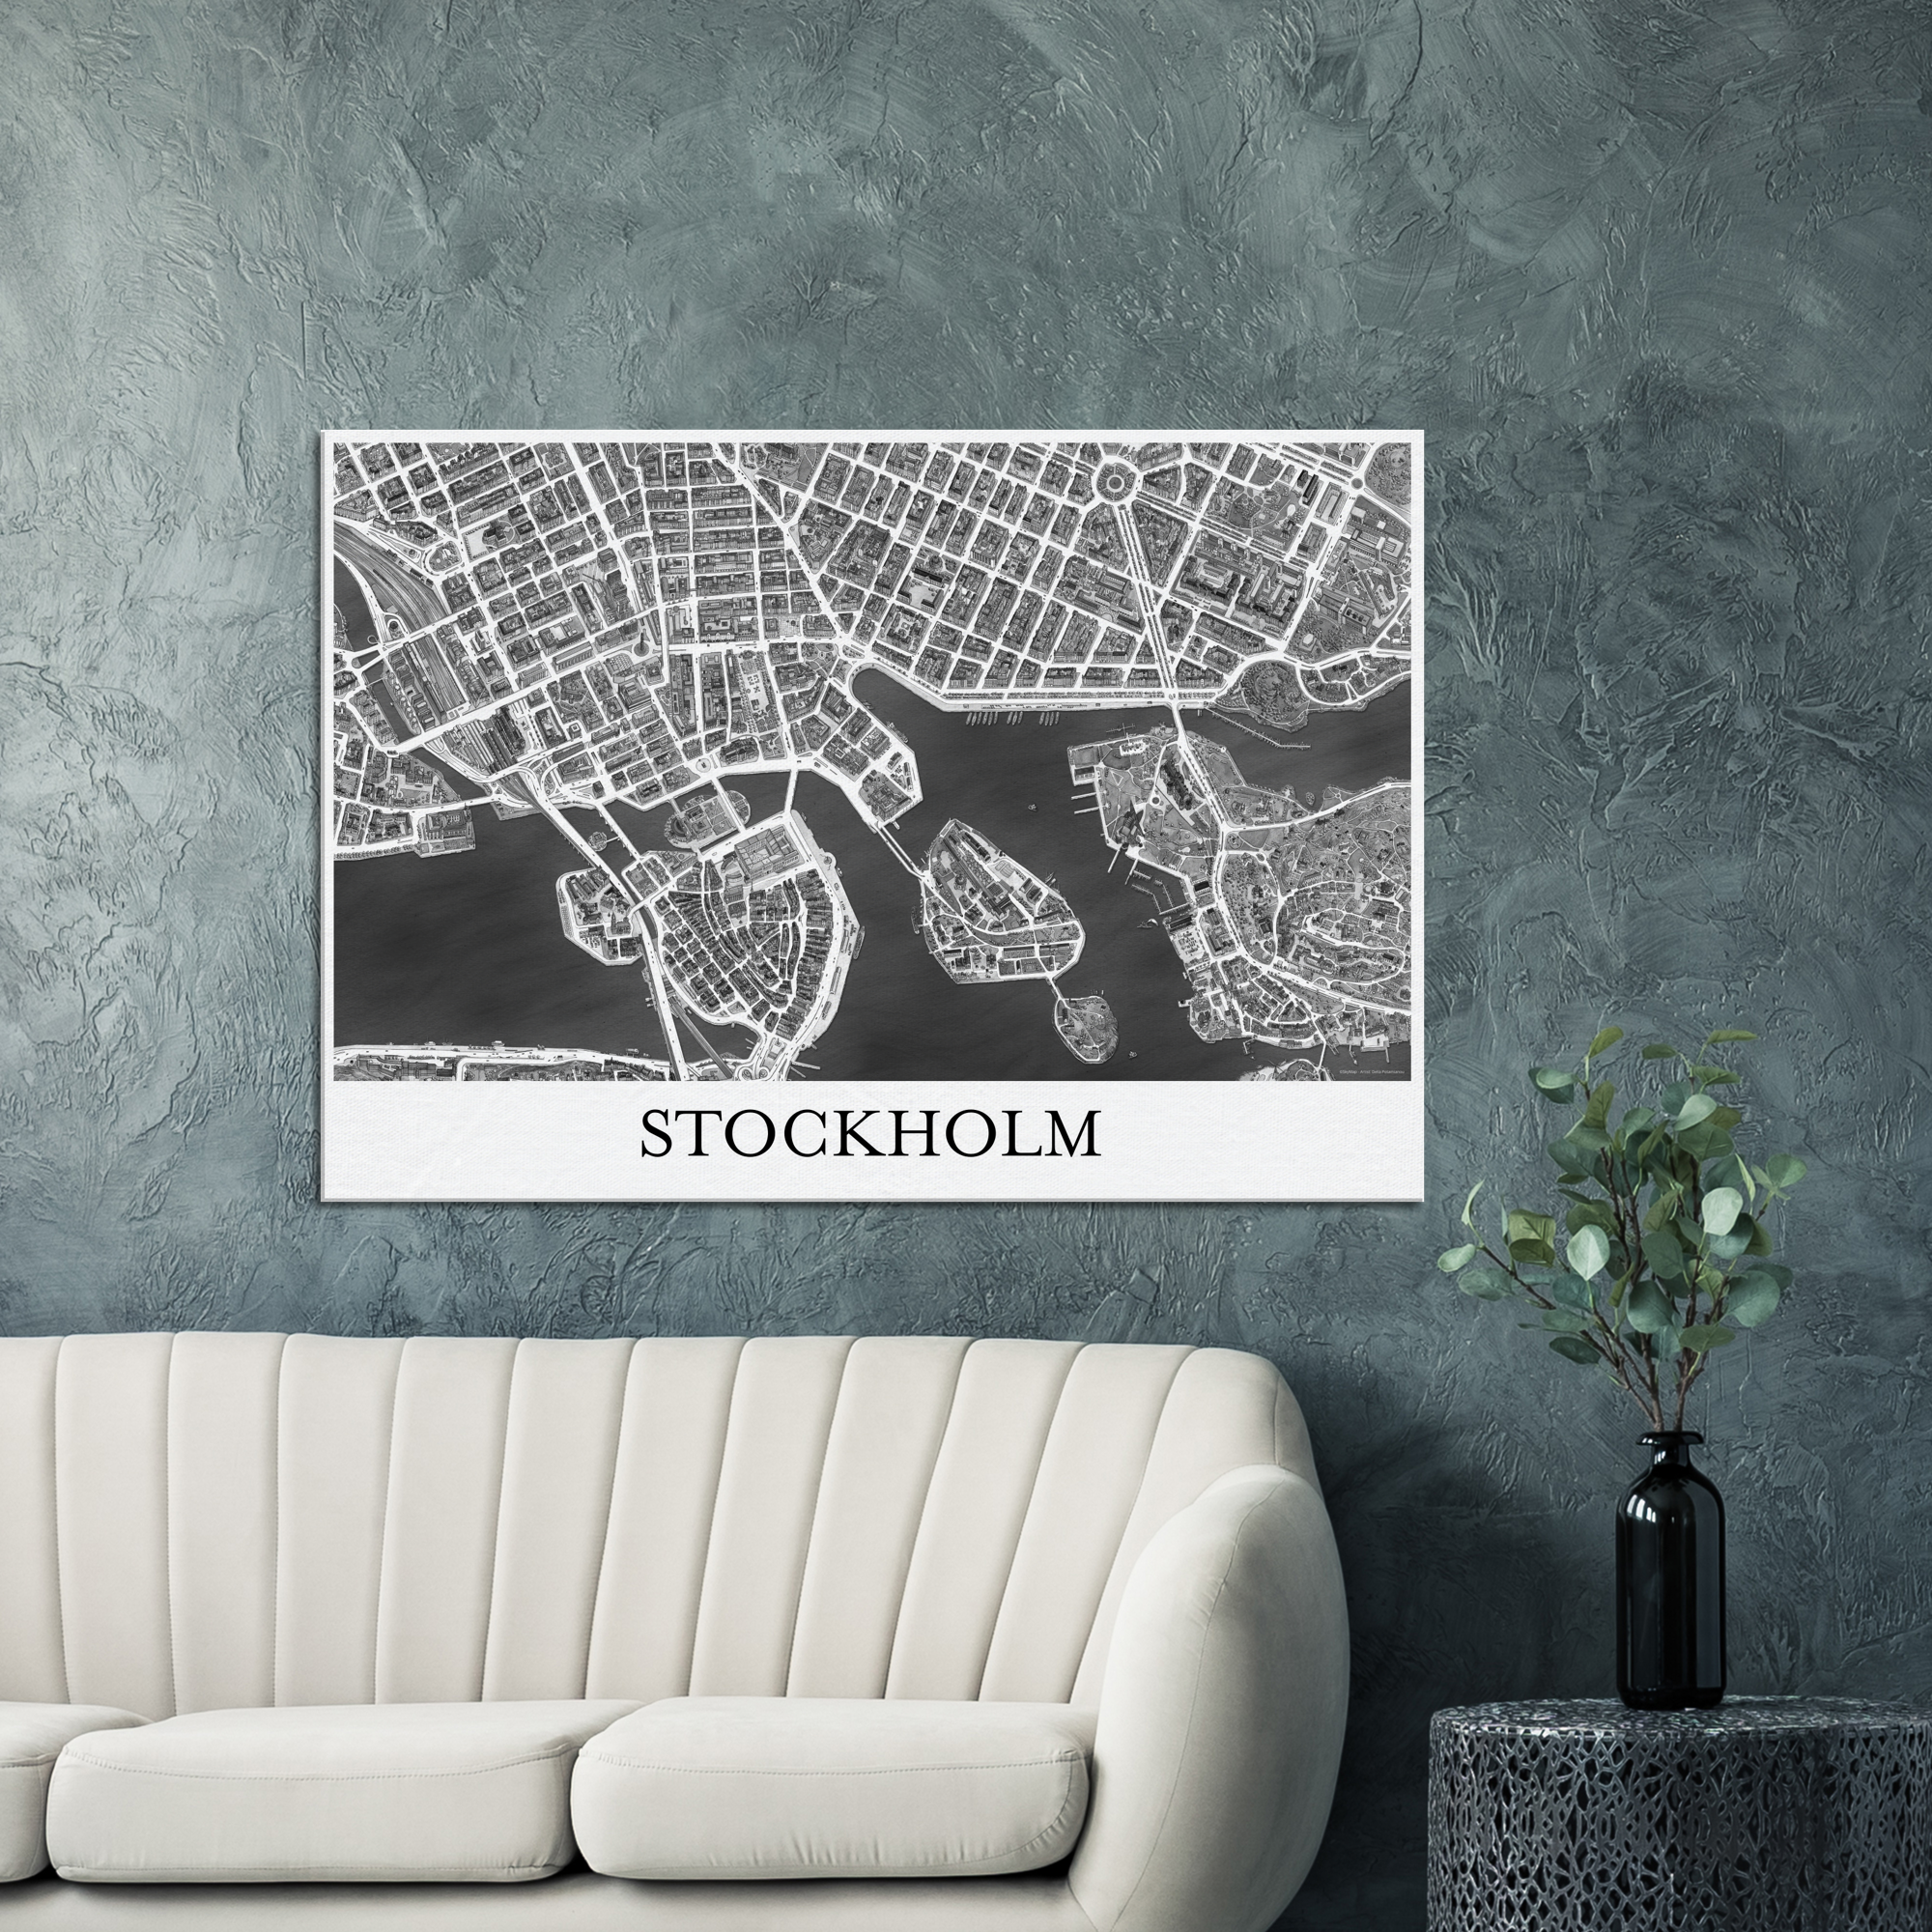 Stockholm, Sweden - Black & White Canvas Print - Framed